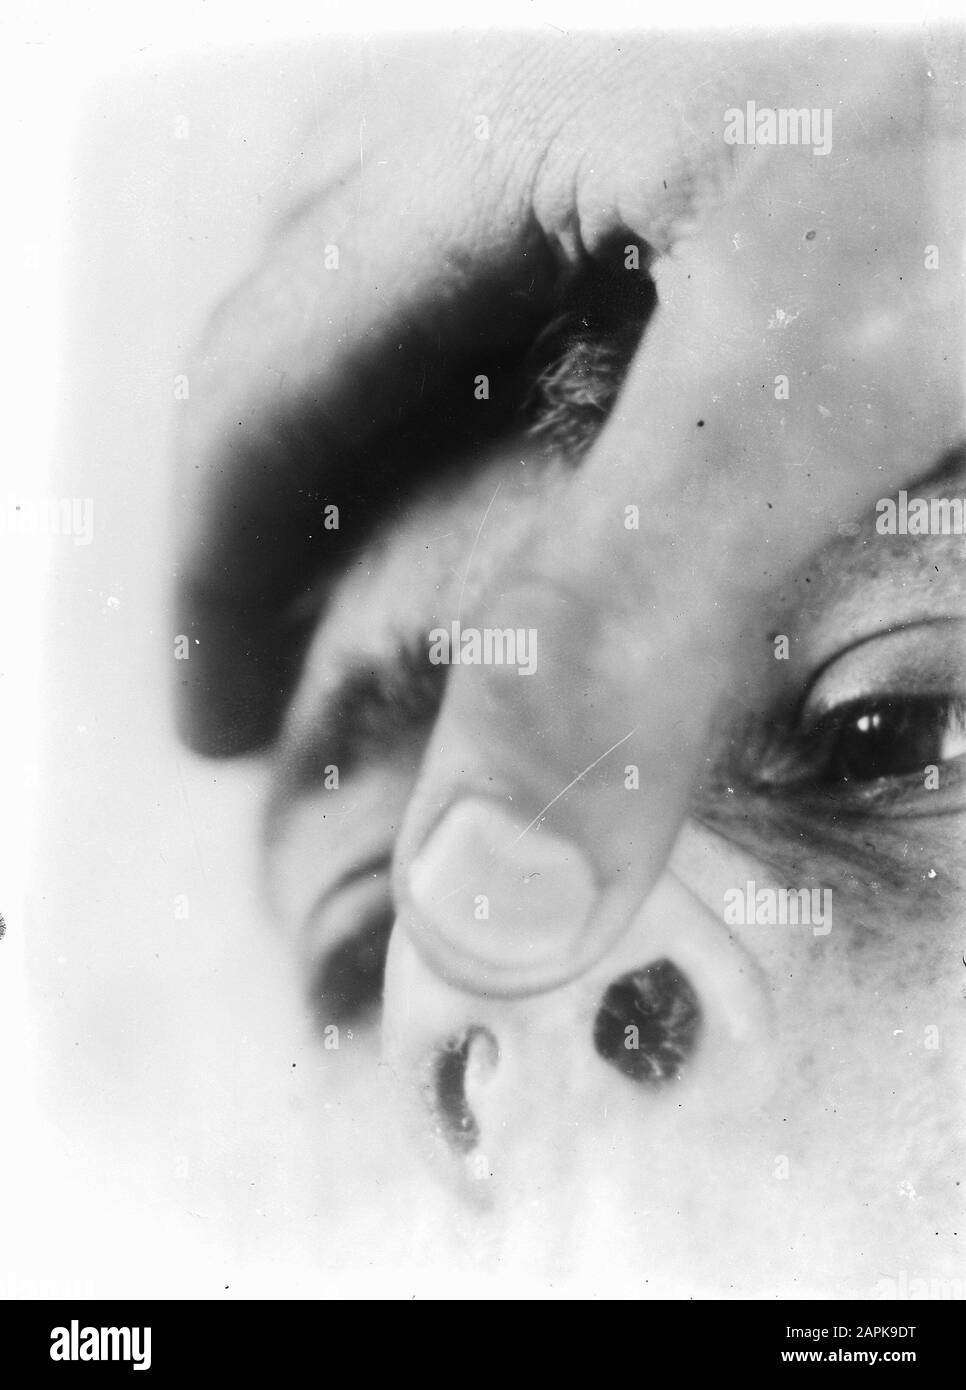 Maladies nasales Banque d'images noir et blanc - Alamy